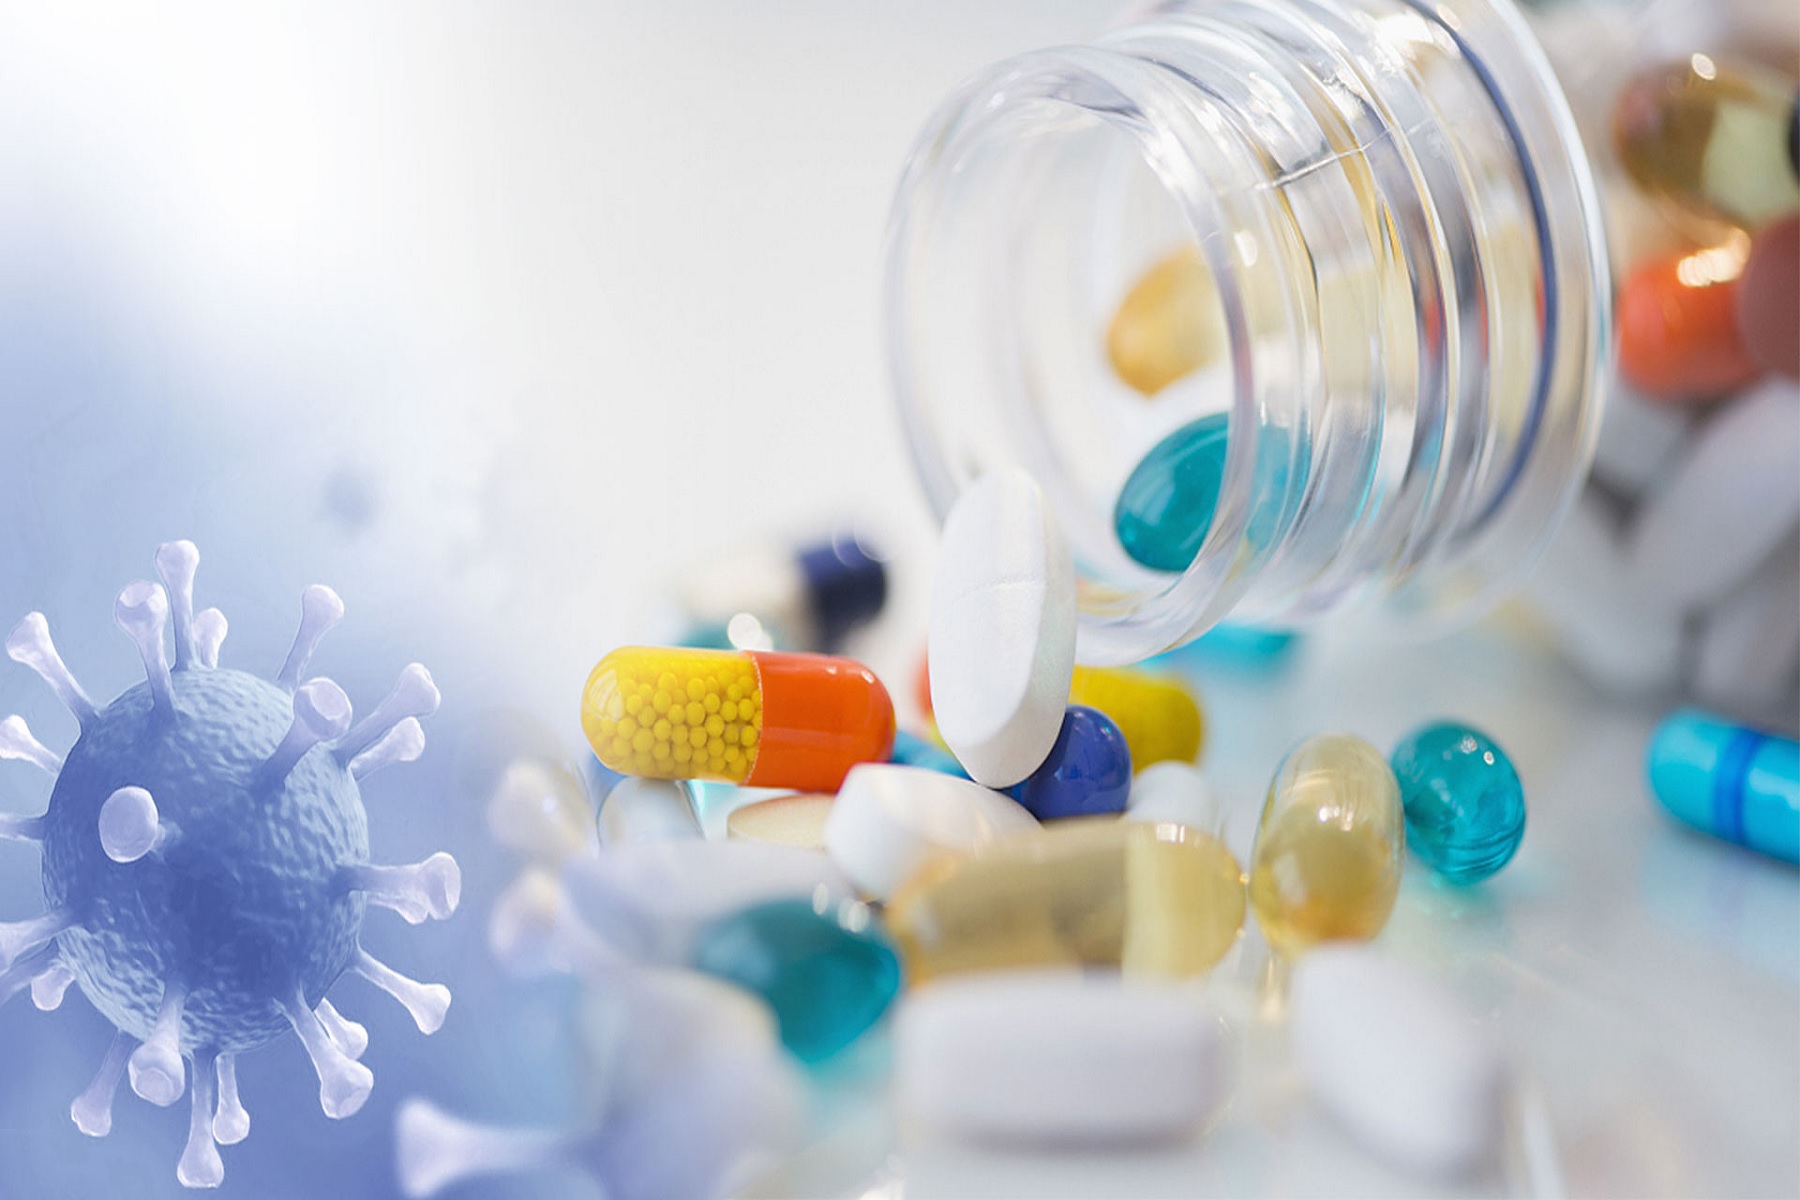 Αναθεωρείται η φαρμακευτική πολιτική για να αντιμετωπιστούν οι ελλείψεις φαρμάκων